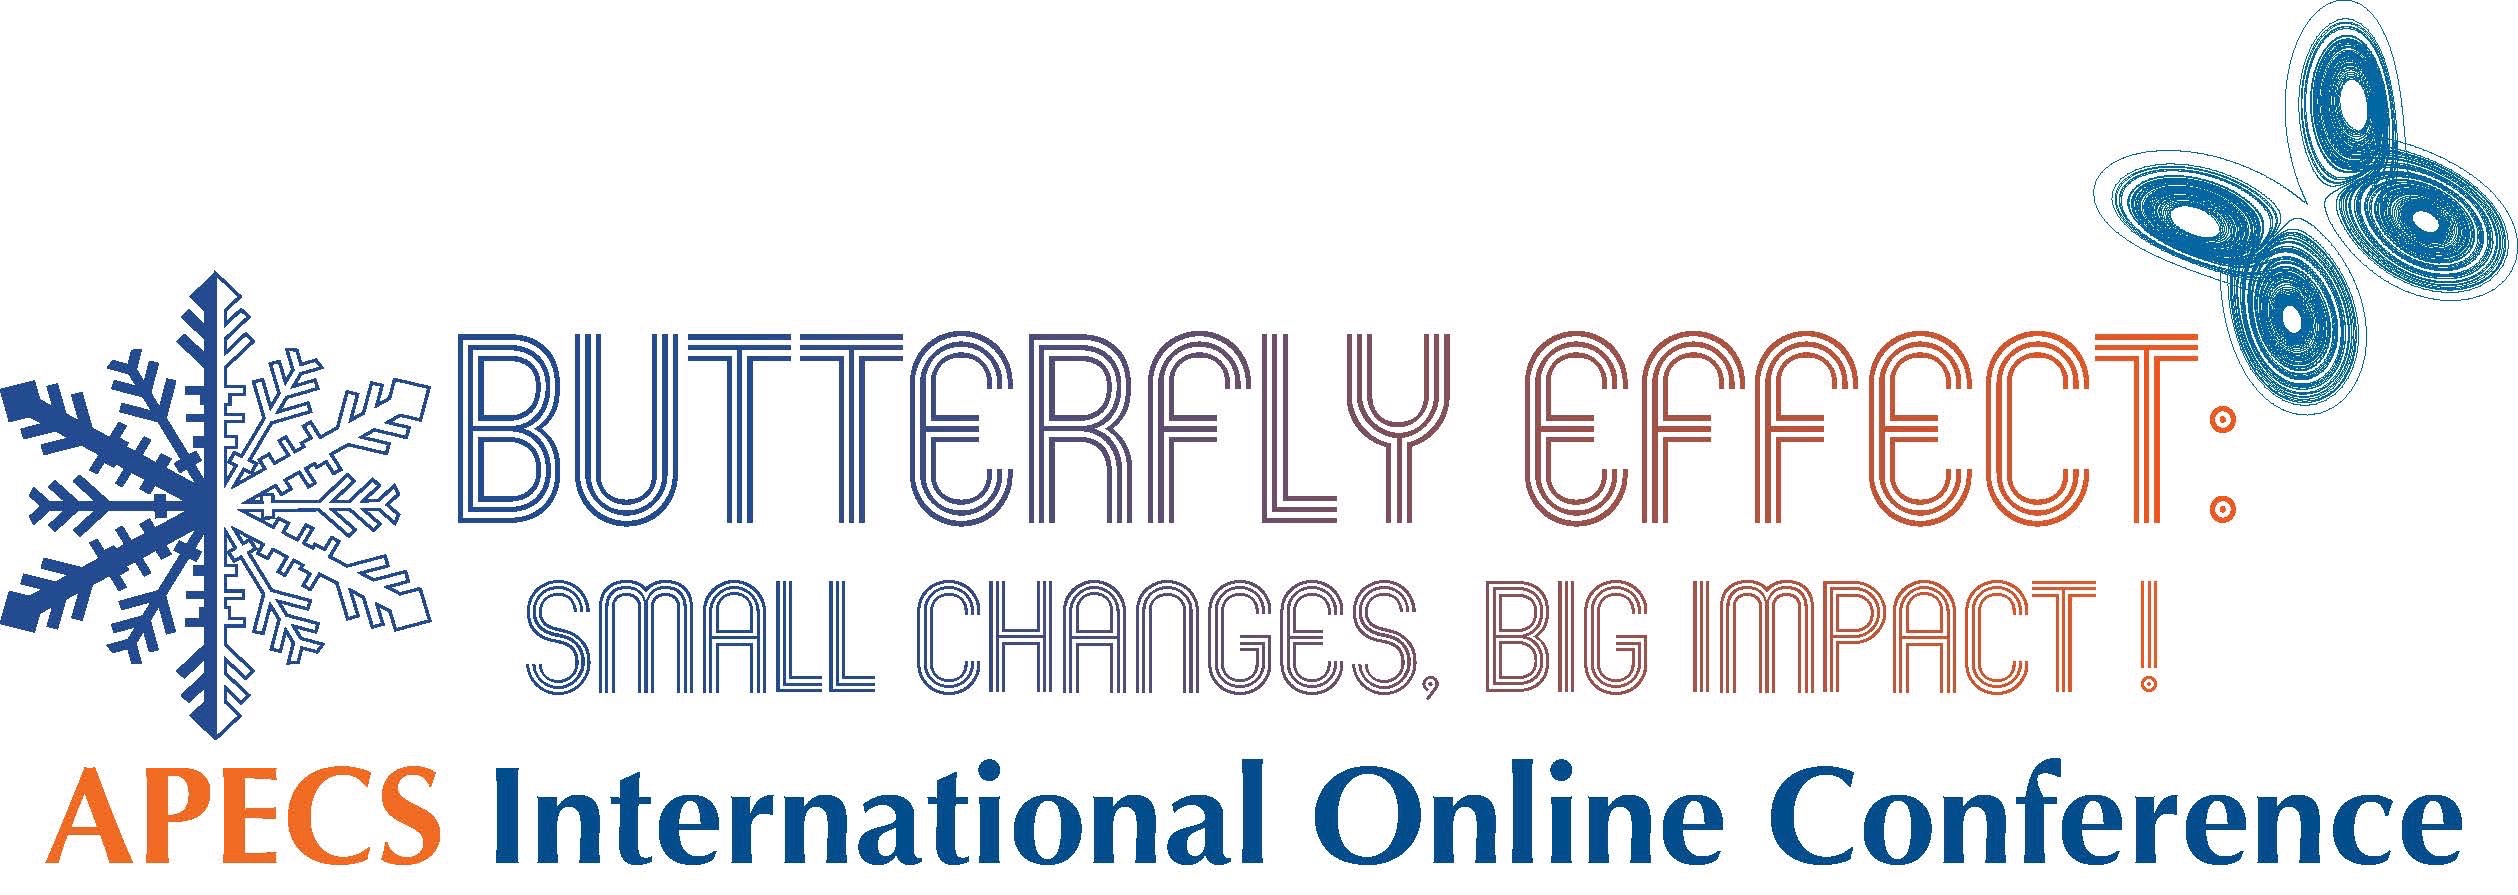 Online Conference logo 2018 1